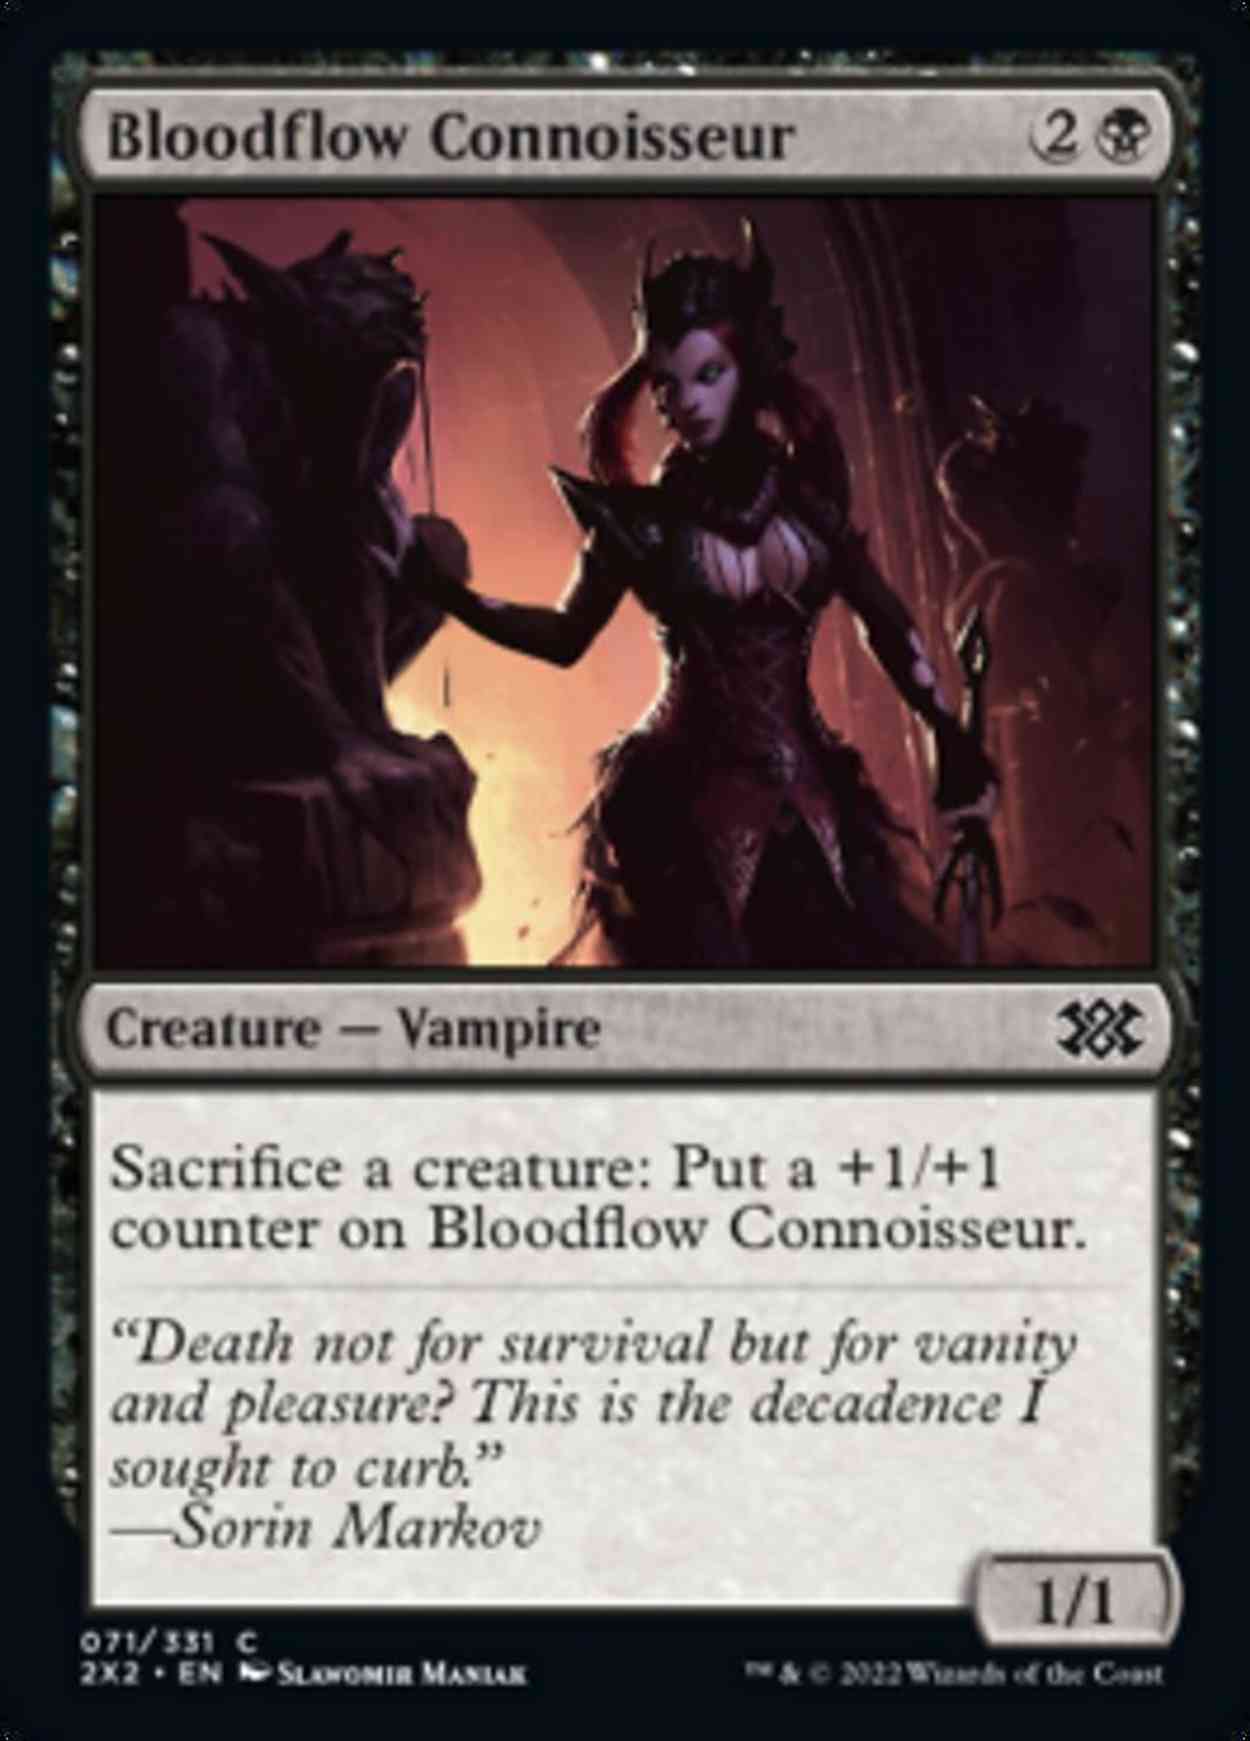 Bloodflow Connoisseur magic card front